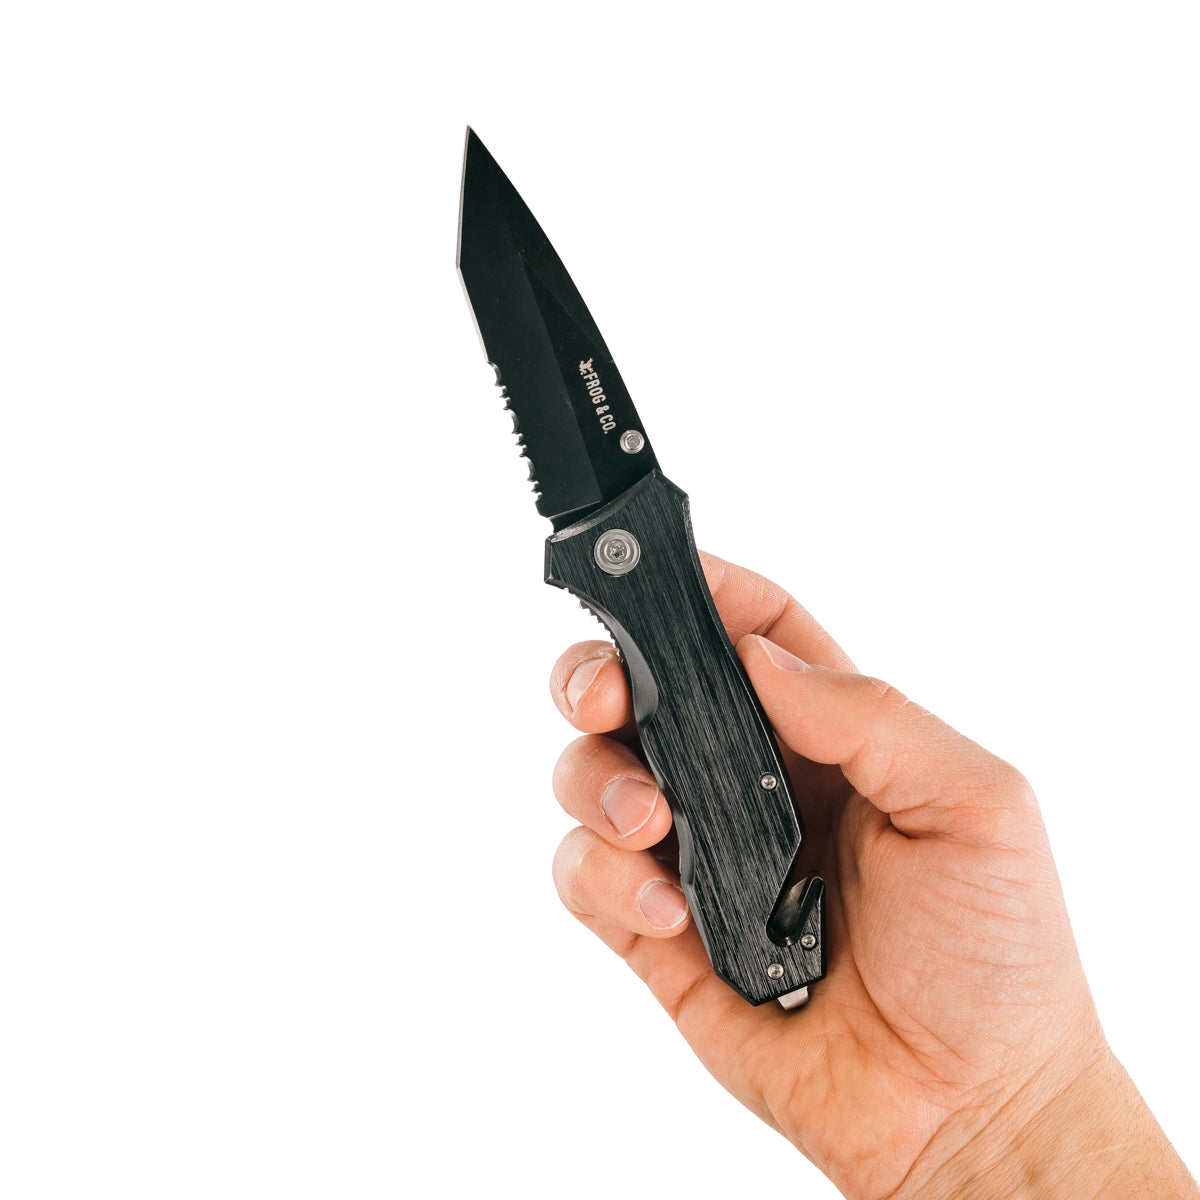 Black Survival Pocket Knife